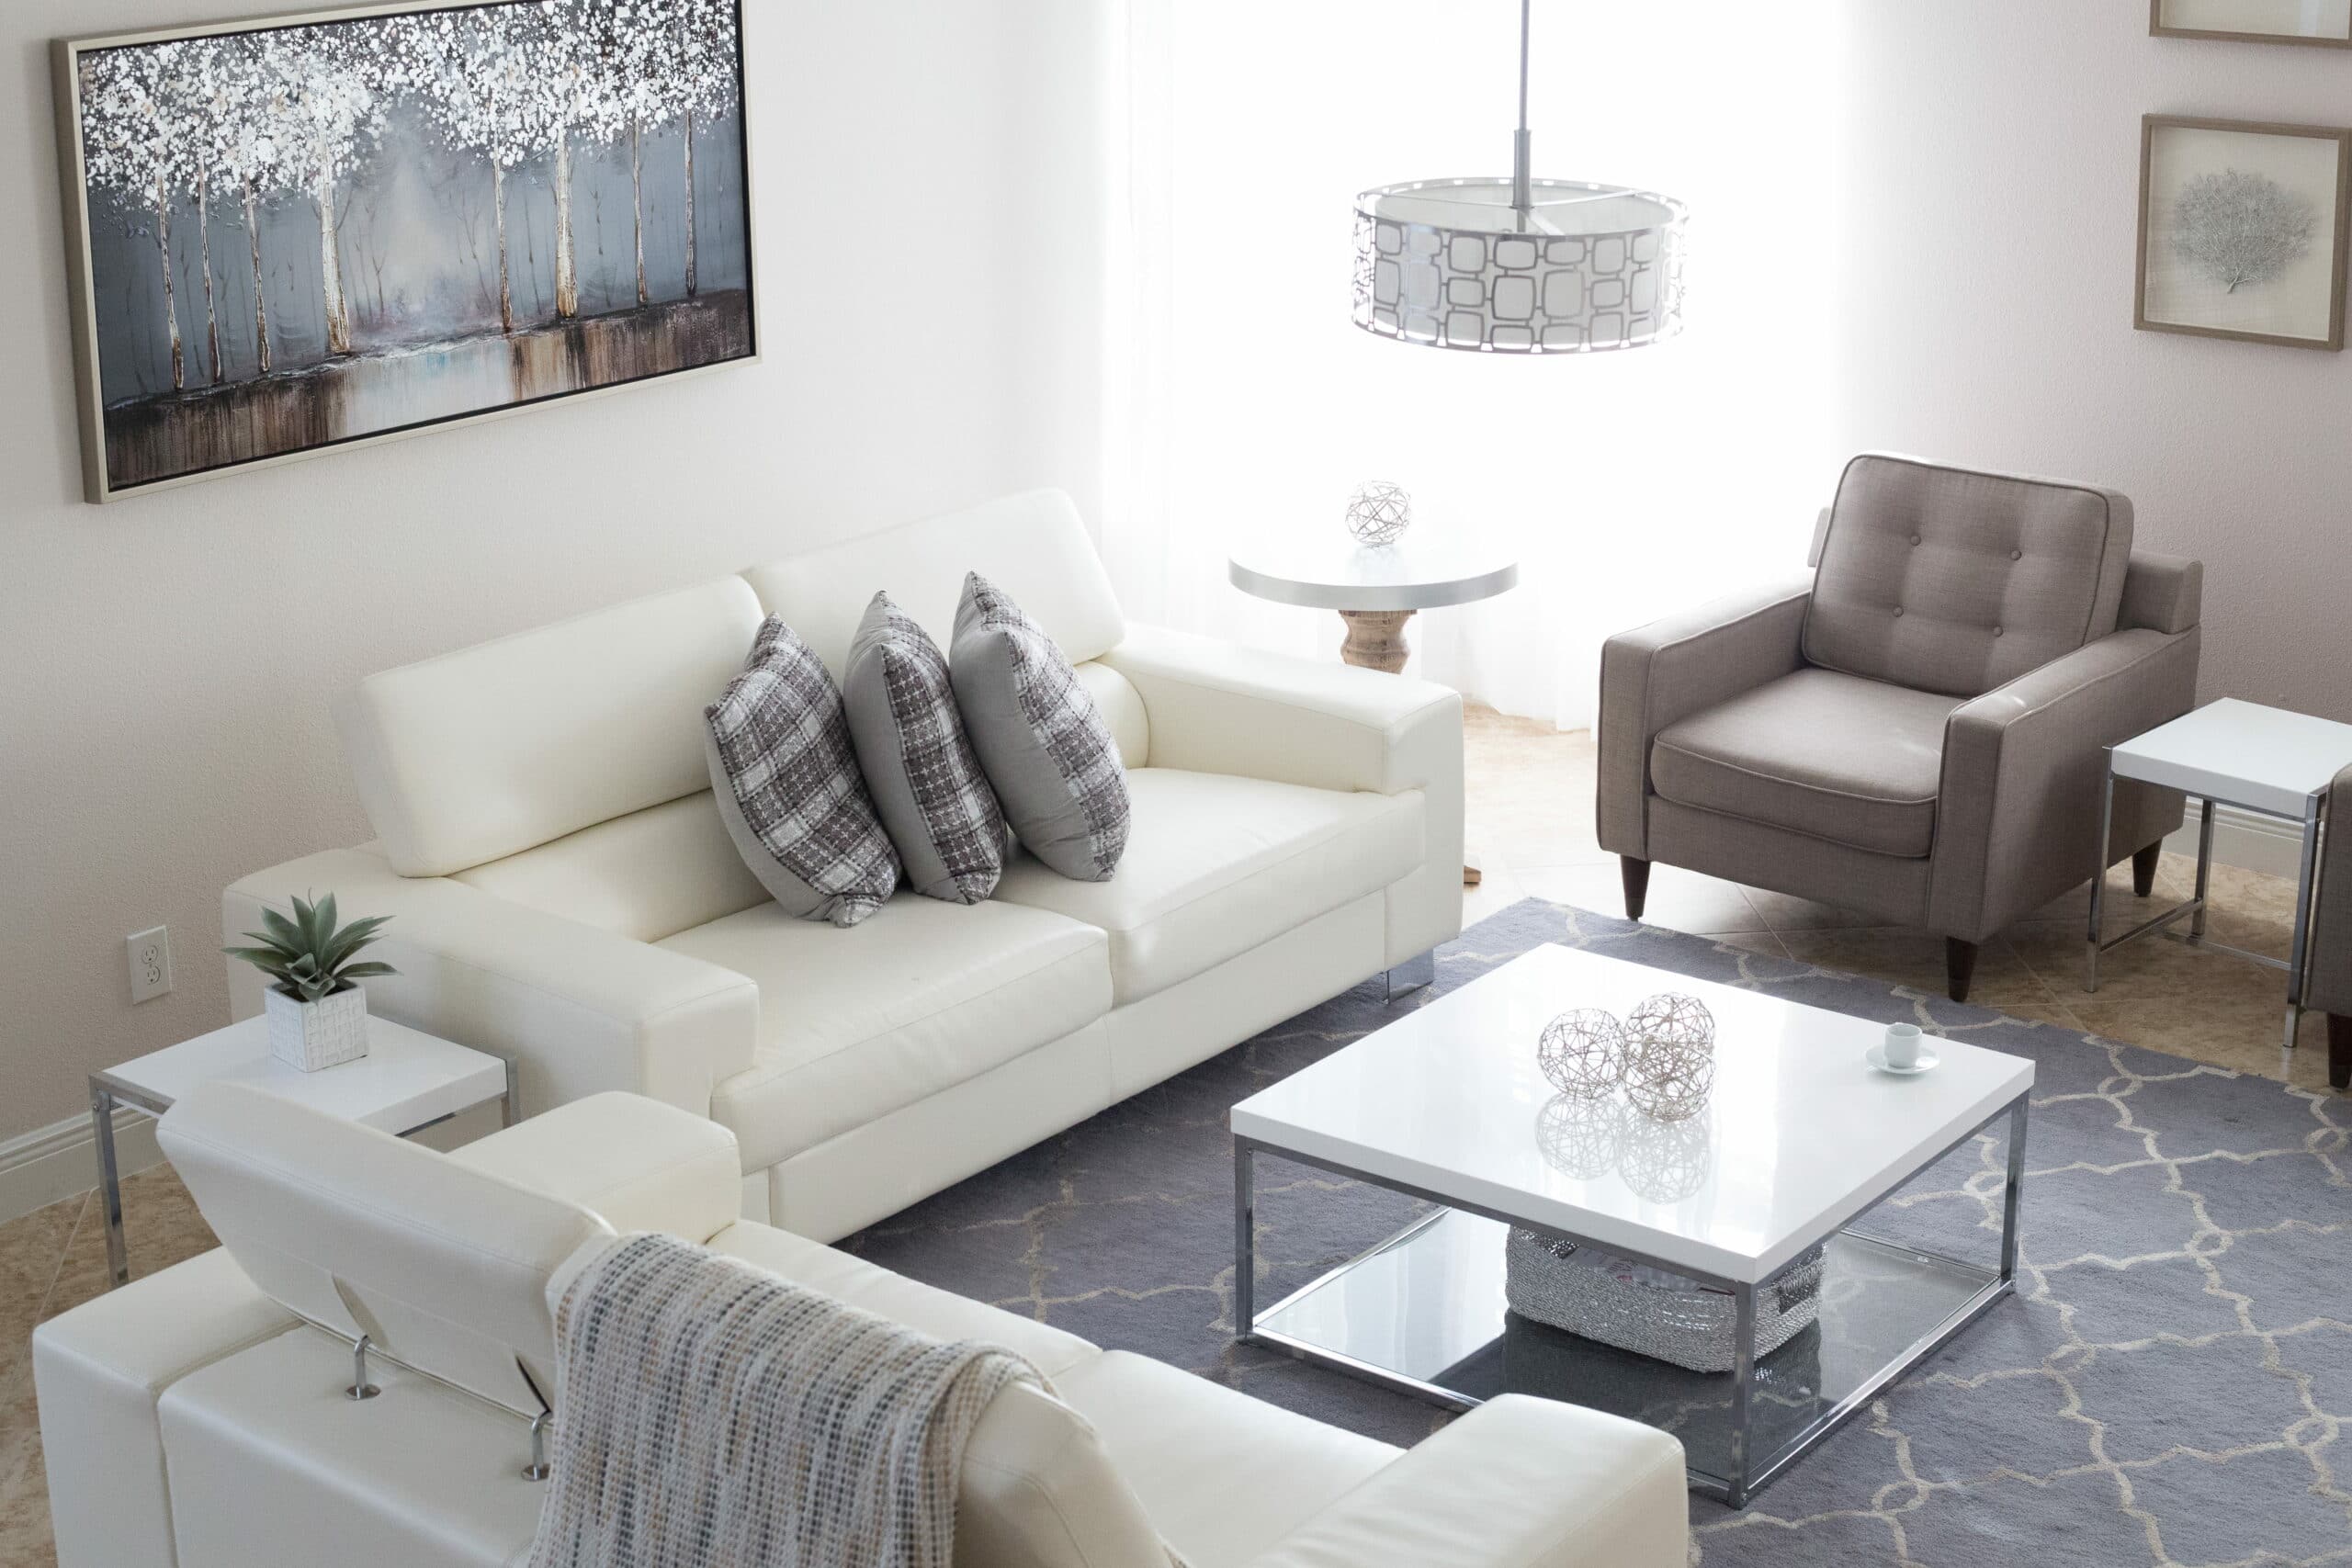 Quadro, lustre, sofás, amofadas, poltrona, tapete e mesa de centro, cinzas e brancos. Imagem do conteúdo sobre